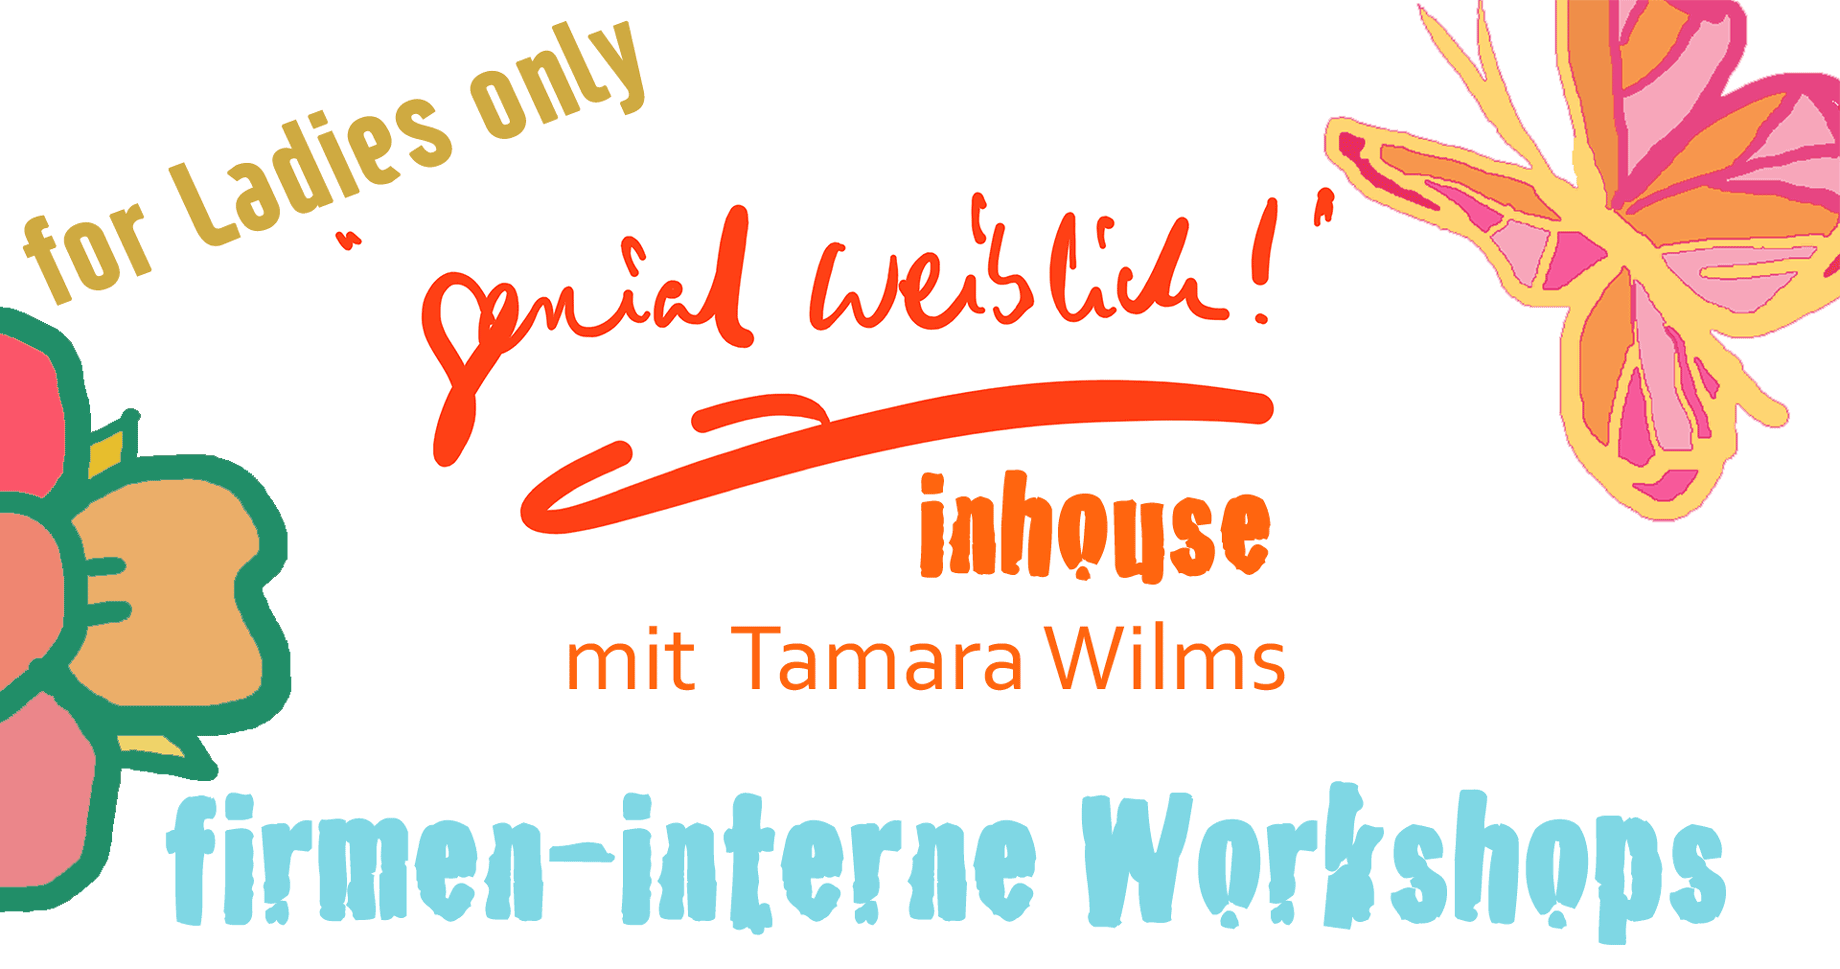 for Ladies only "genial weiblich!" inhouse mit Tamara Wilms, firmen-interne Workshops